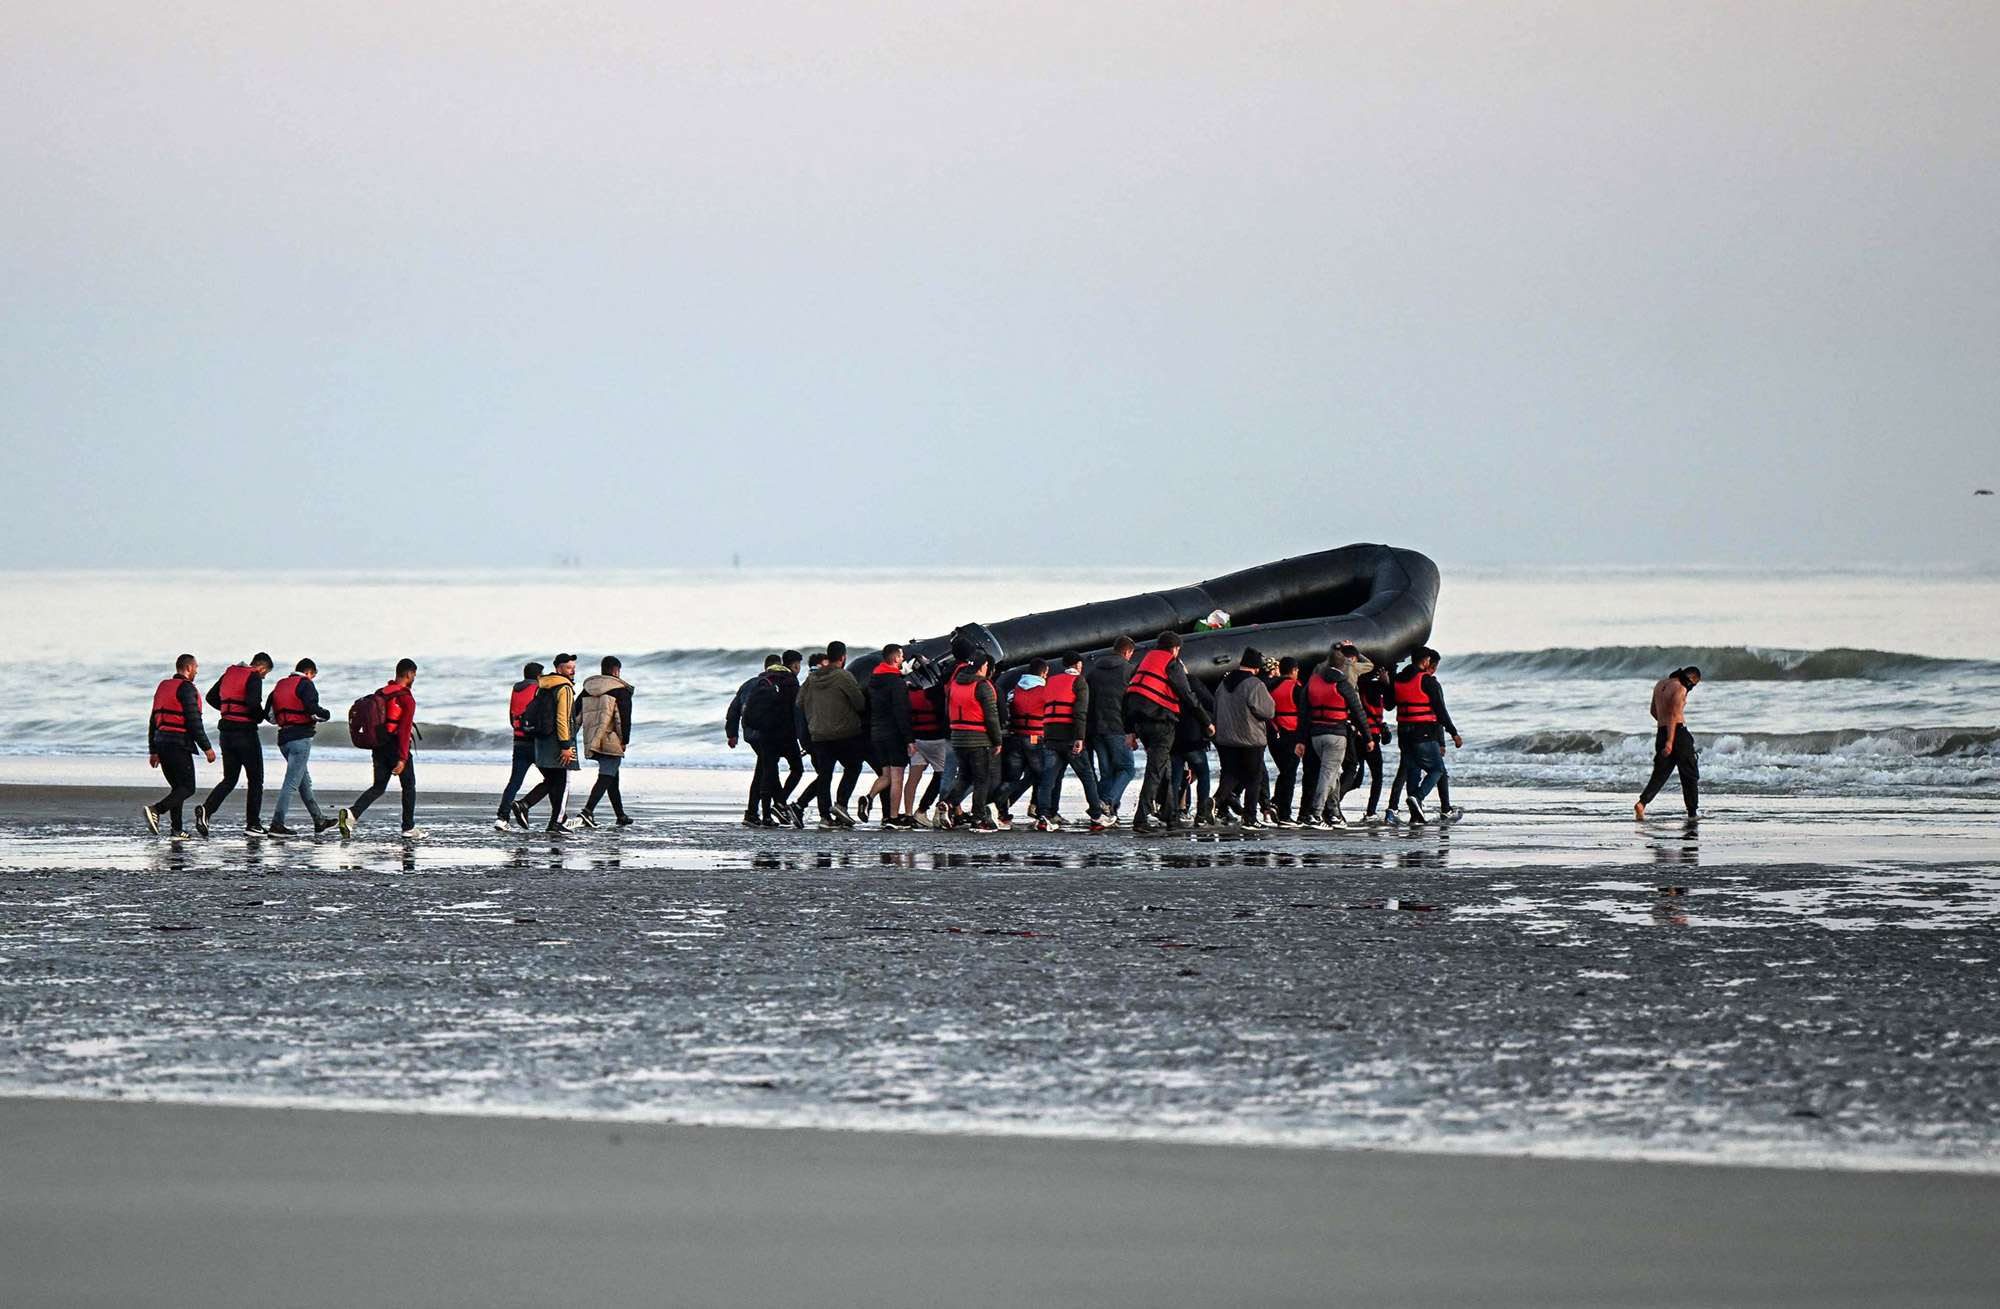 Σχεδόν 700 πρόσφυγες & μετανάστες διέσχισαν σε μια μέρα τη Μάγχη με μικρά σκάφη